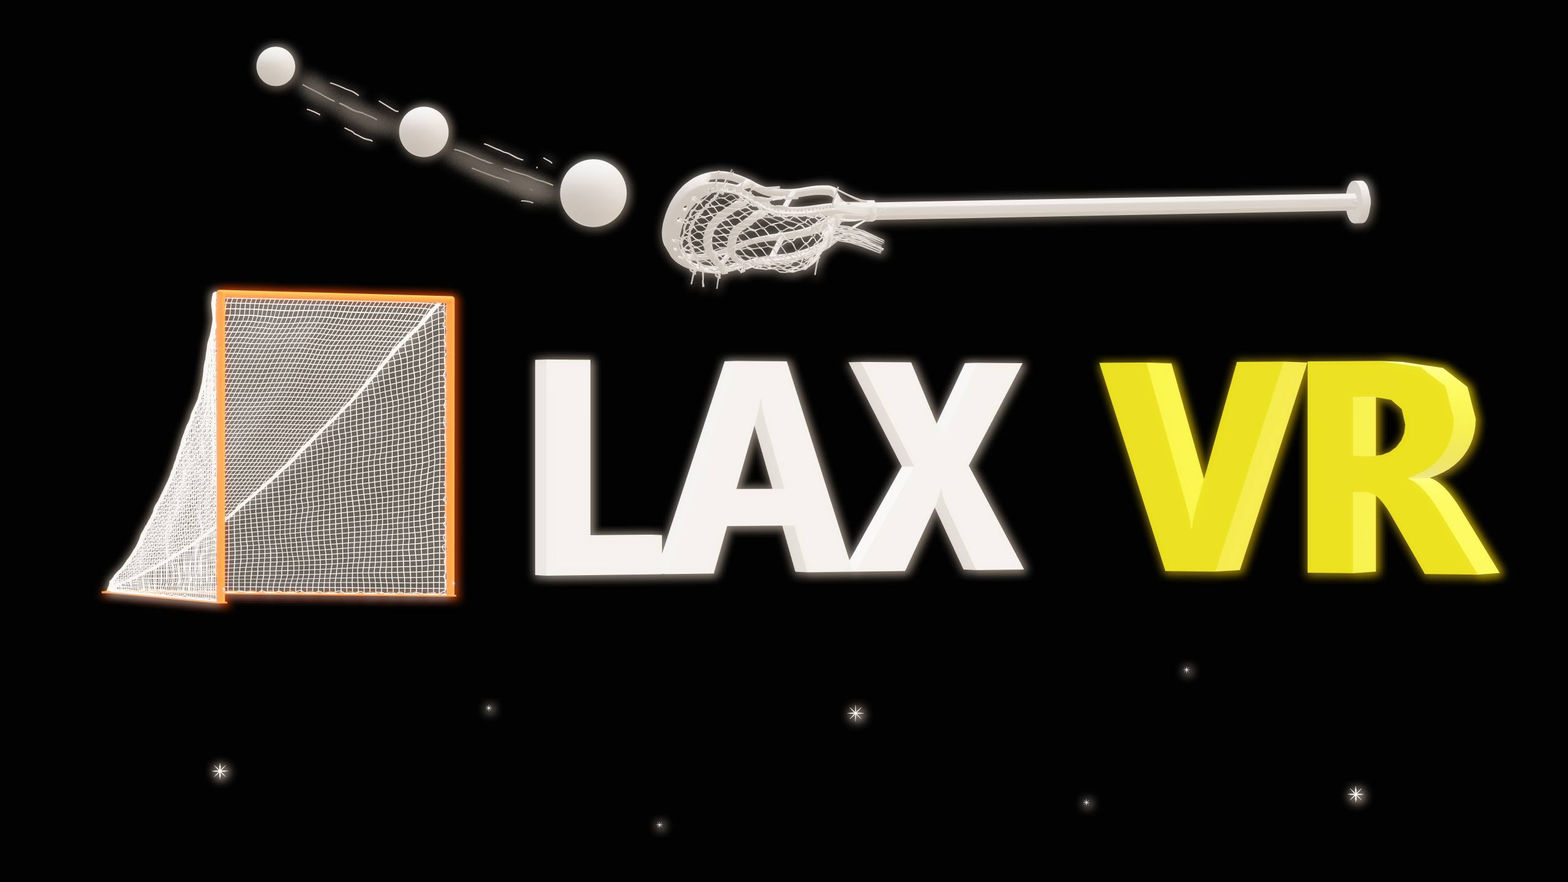 LAX VR